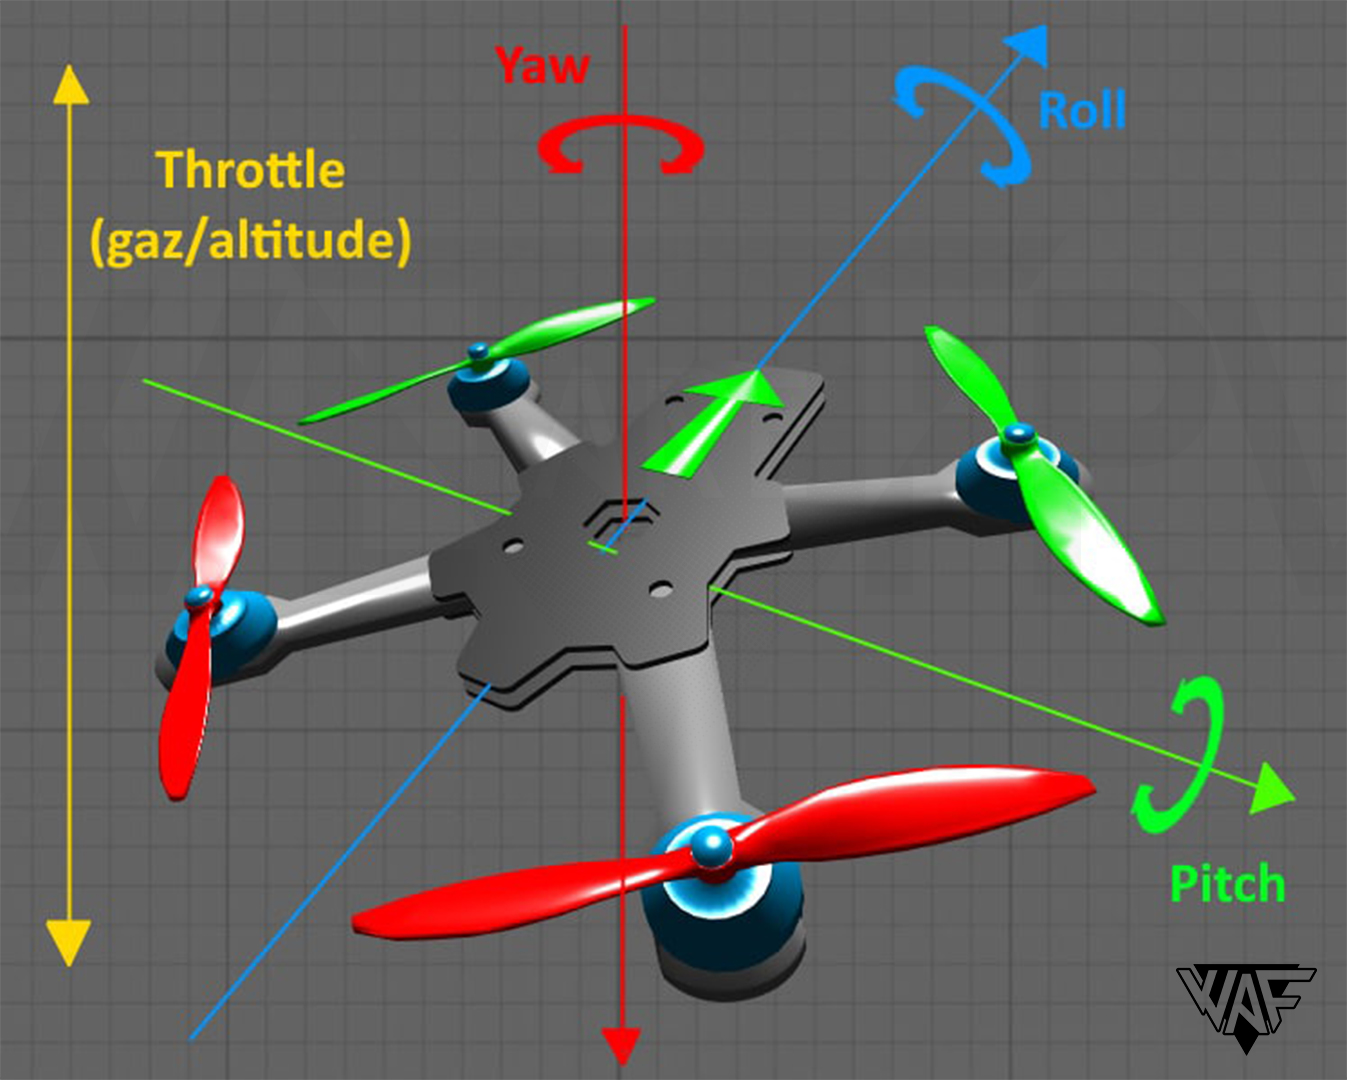 Quel drone de course pour un débutant ?